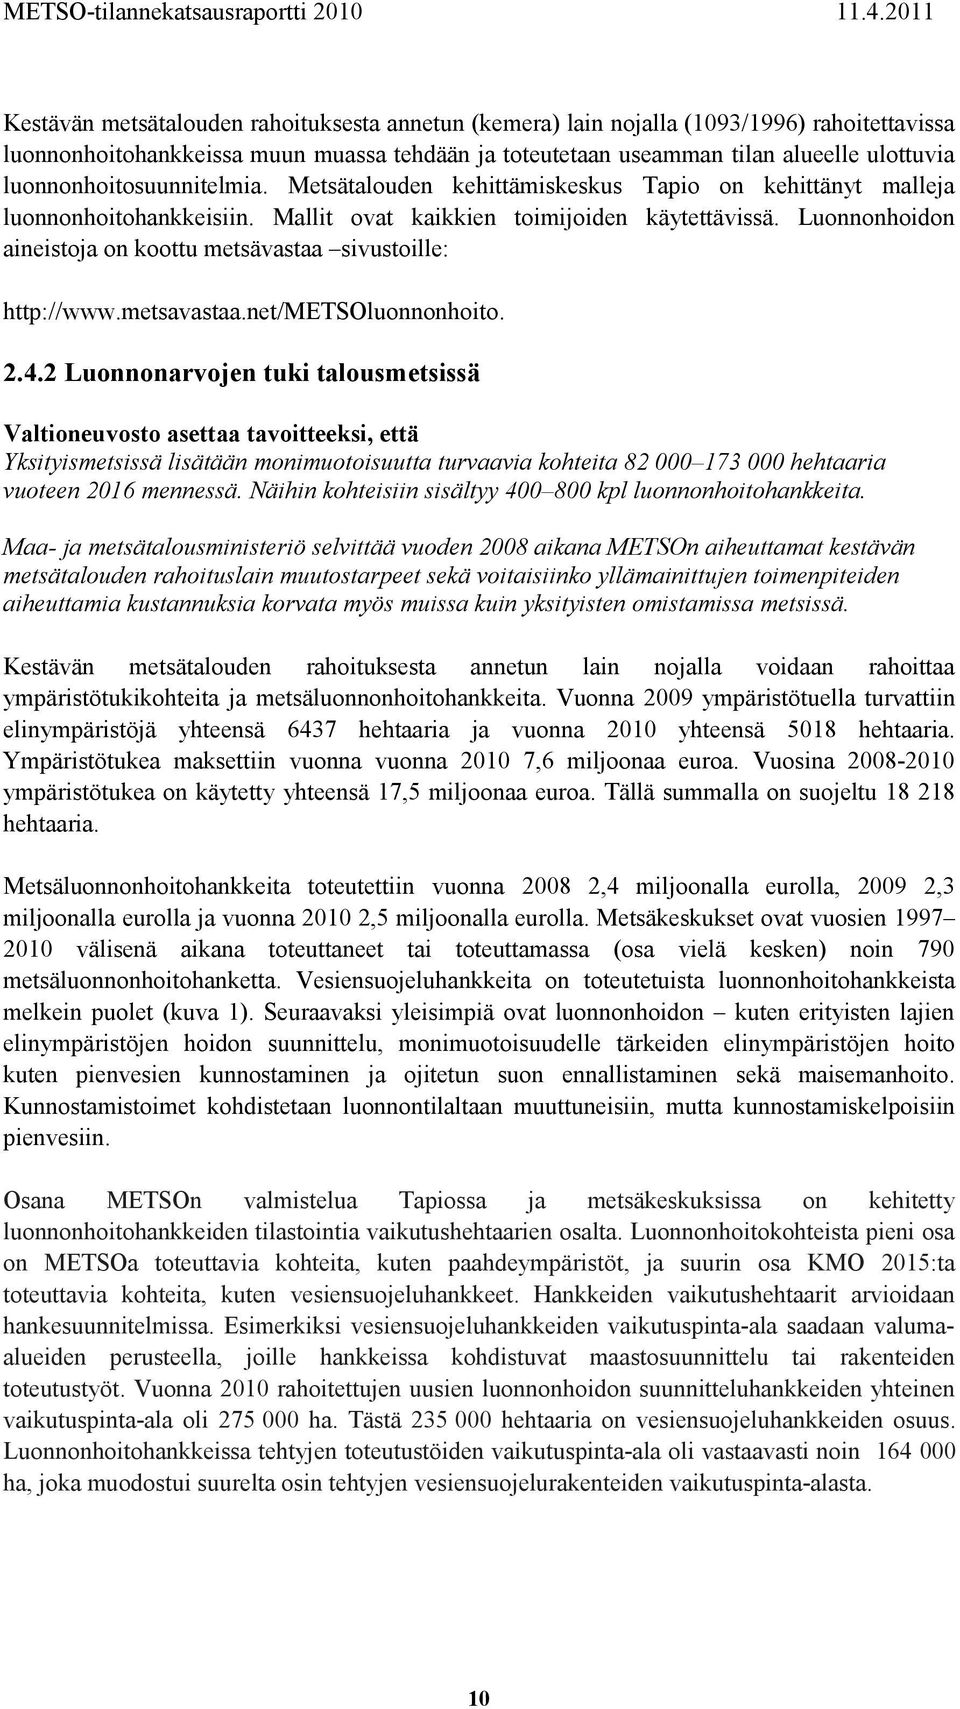 Luonnonhoidon aineistoja on koottu metsävastaa sivustoille: http://www.metsavastaa.net/metsoluonnonhoito. 2.4.